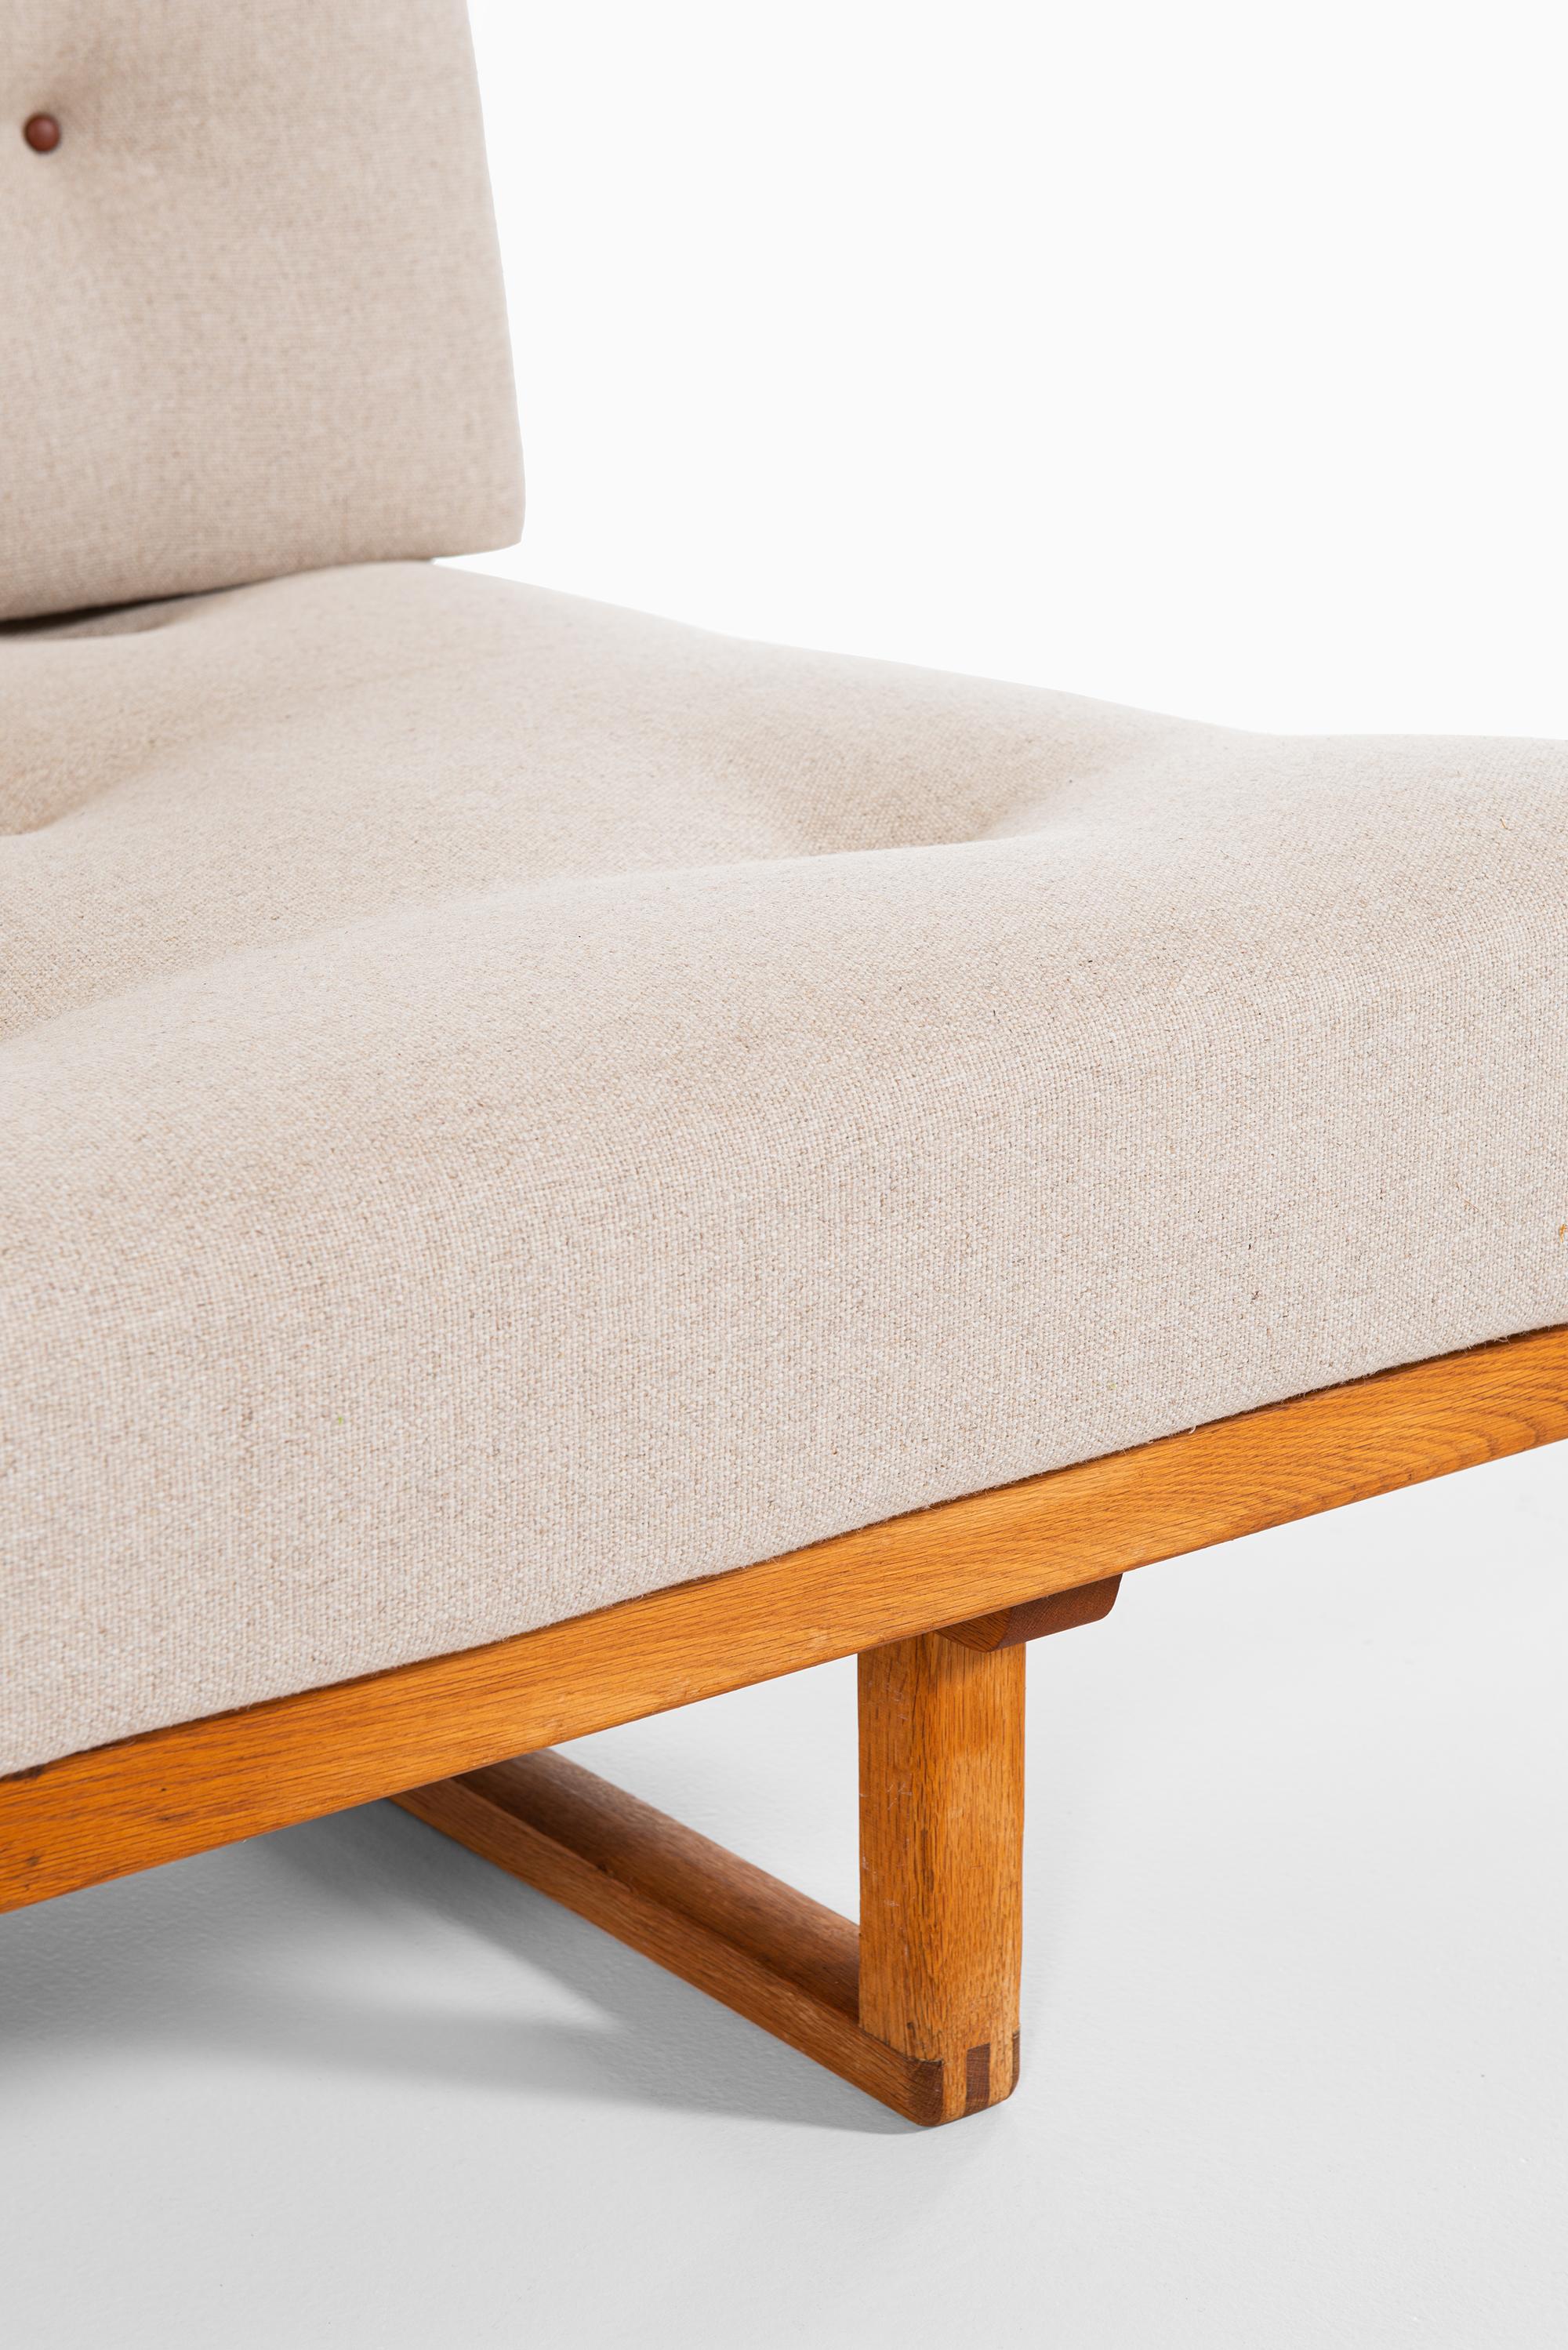 Seltenes Sofa / Tagesbett Modell 4311/4312:: entworfen von Børge Mogensen. Hergestellt von der Fredericia Stolenfabrik in Dänemark.